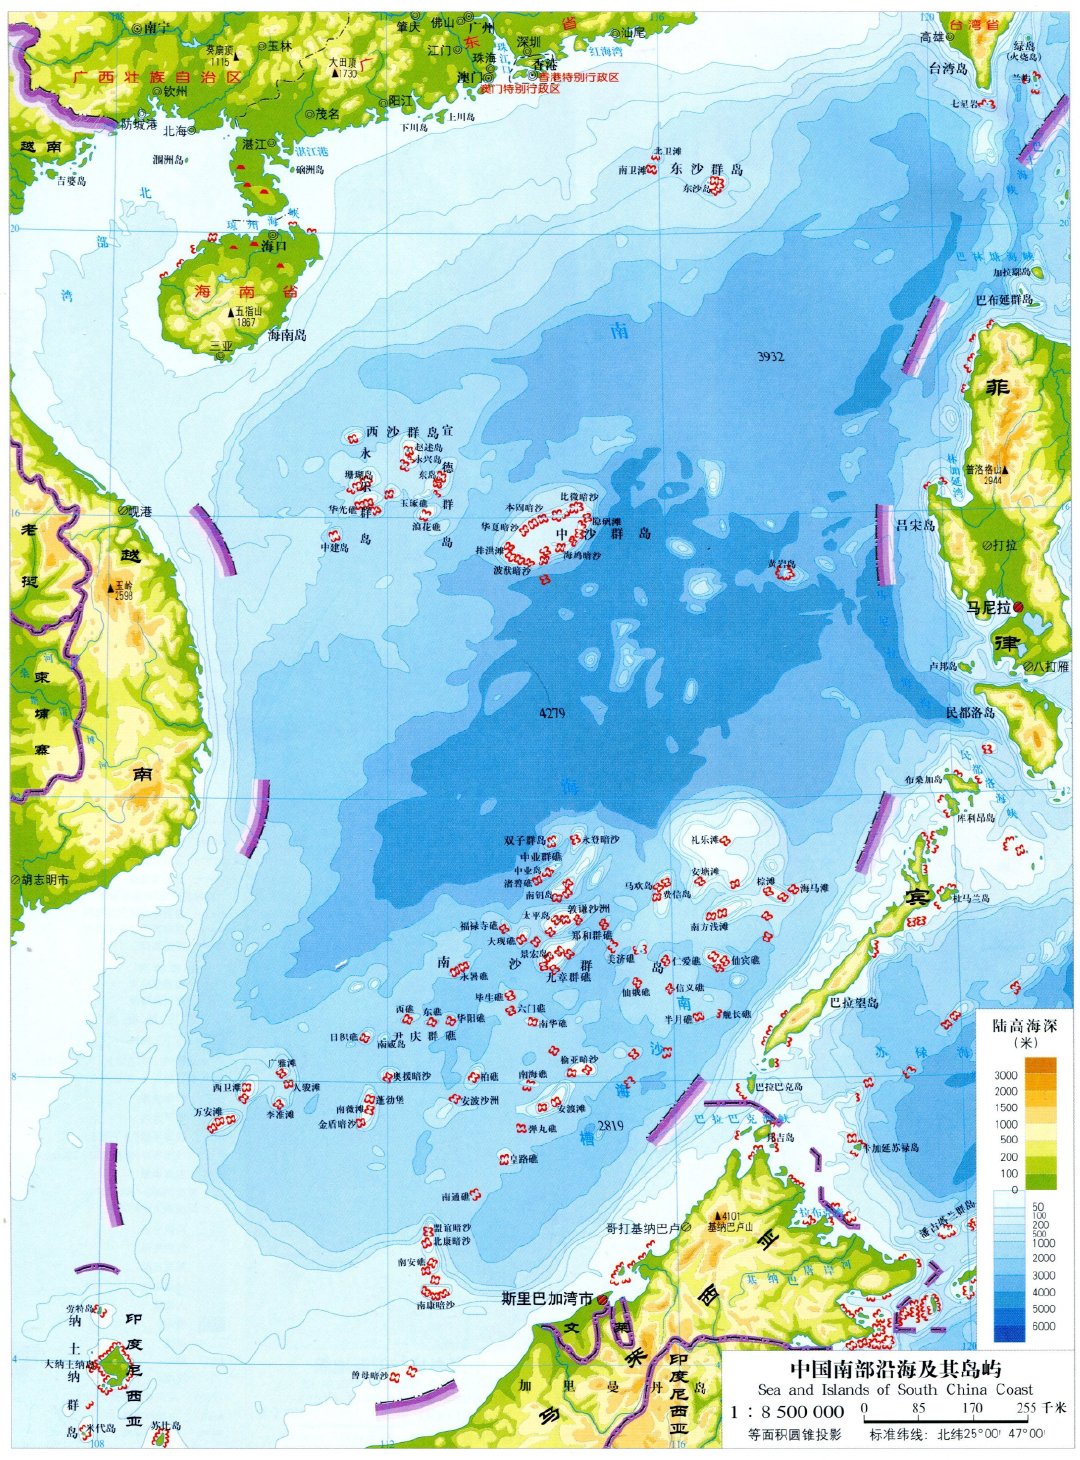 塞舌尔弗拉格私人岛屿Fregate Island Private Seychelles – 爱岛人 海岛旅行专家